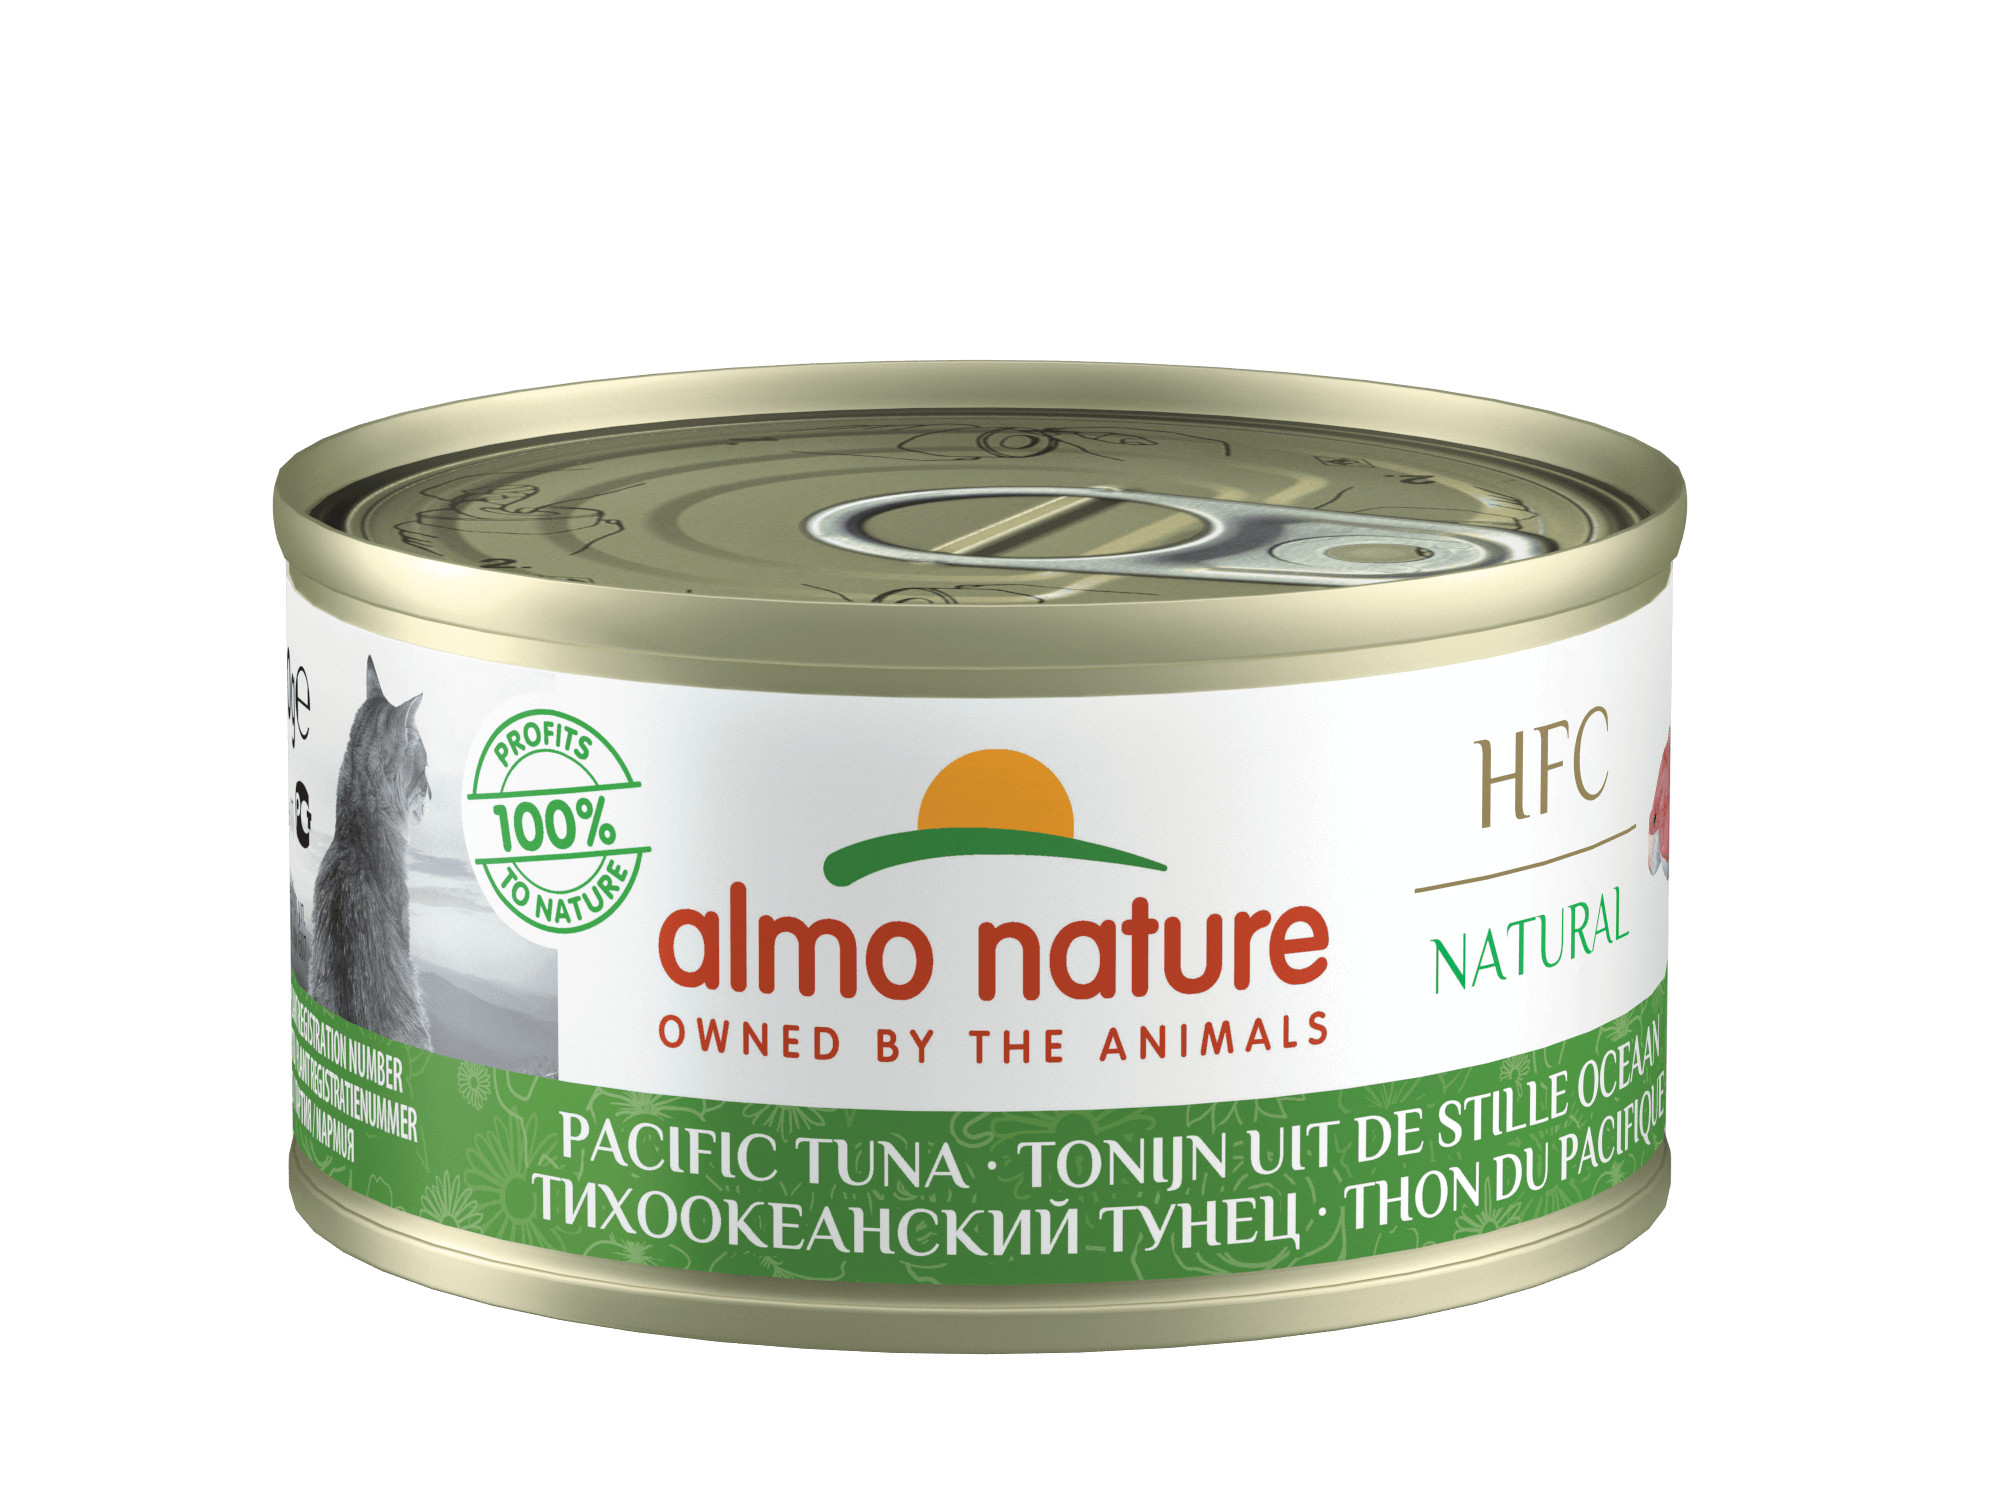 Almo Nature HFC Natural Tonijn uit Stille Oceaan (70 gram)